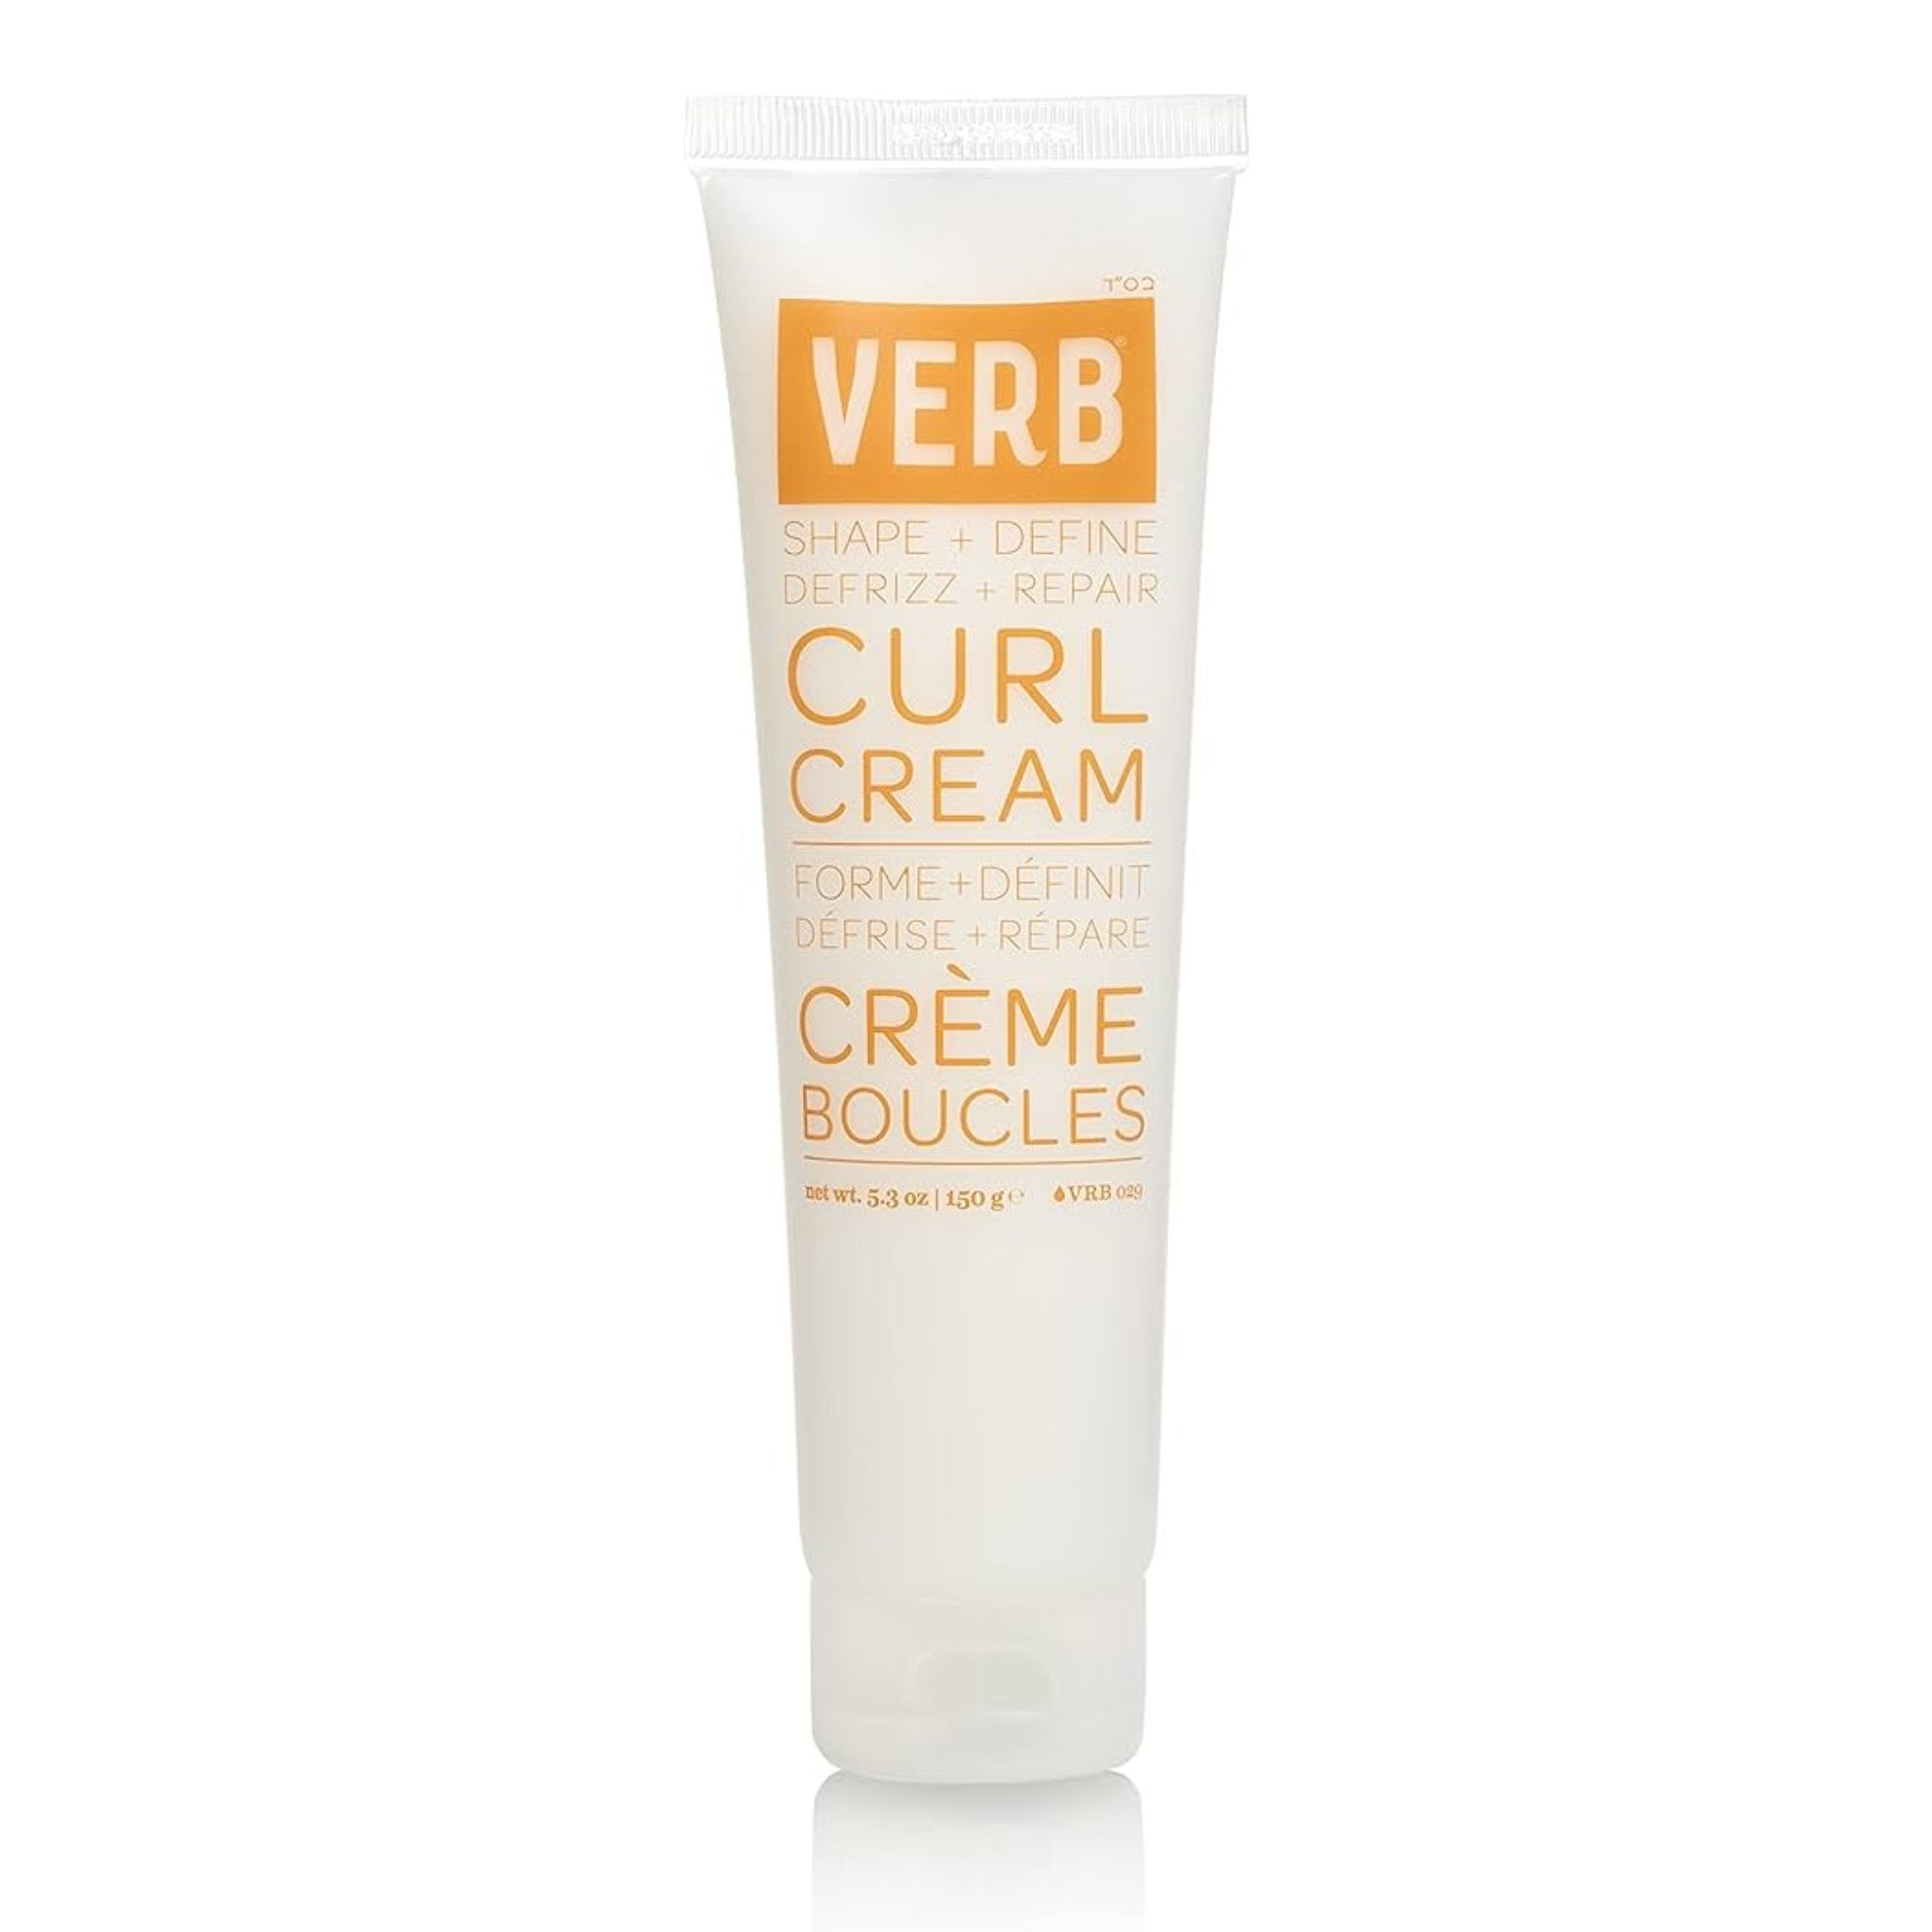 Verb. Crème pour les Boucles - 150g (en solde) - Concept C. Shop